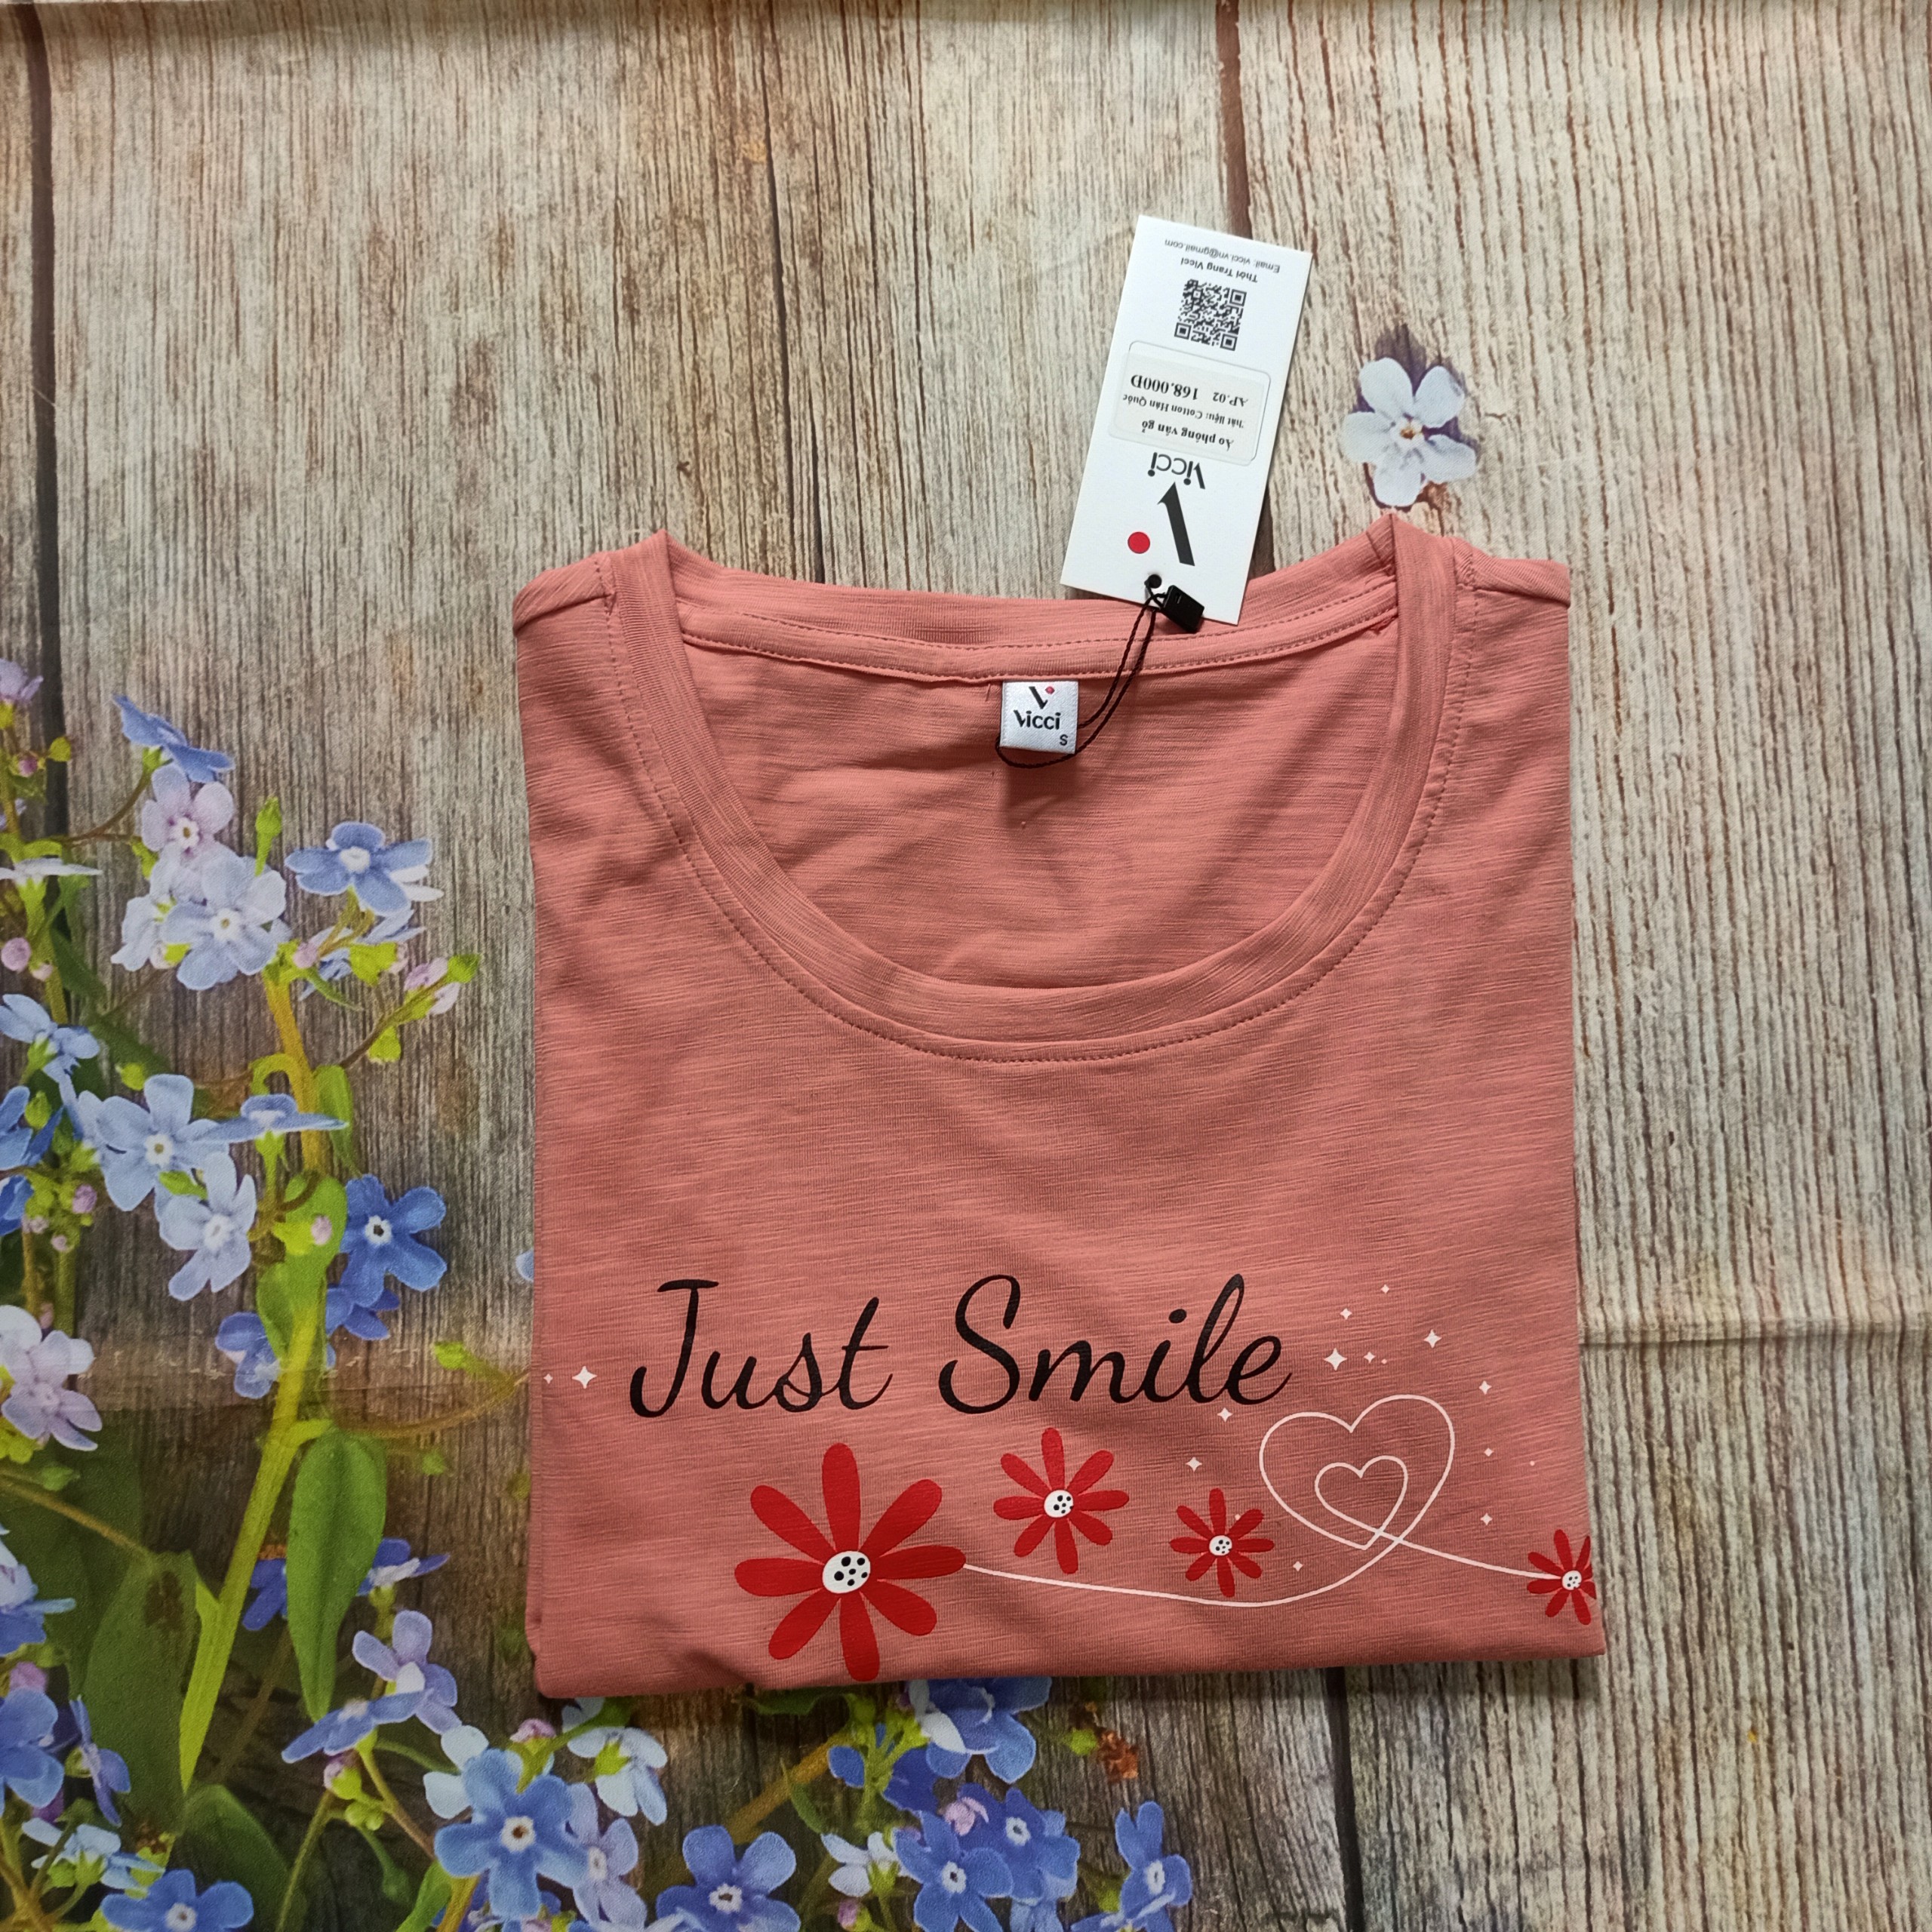 Áo phông, áo thun nữ  cộc tay Vicci AP.01.3 chất liệu cotton vân gỗ in chữ Smile